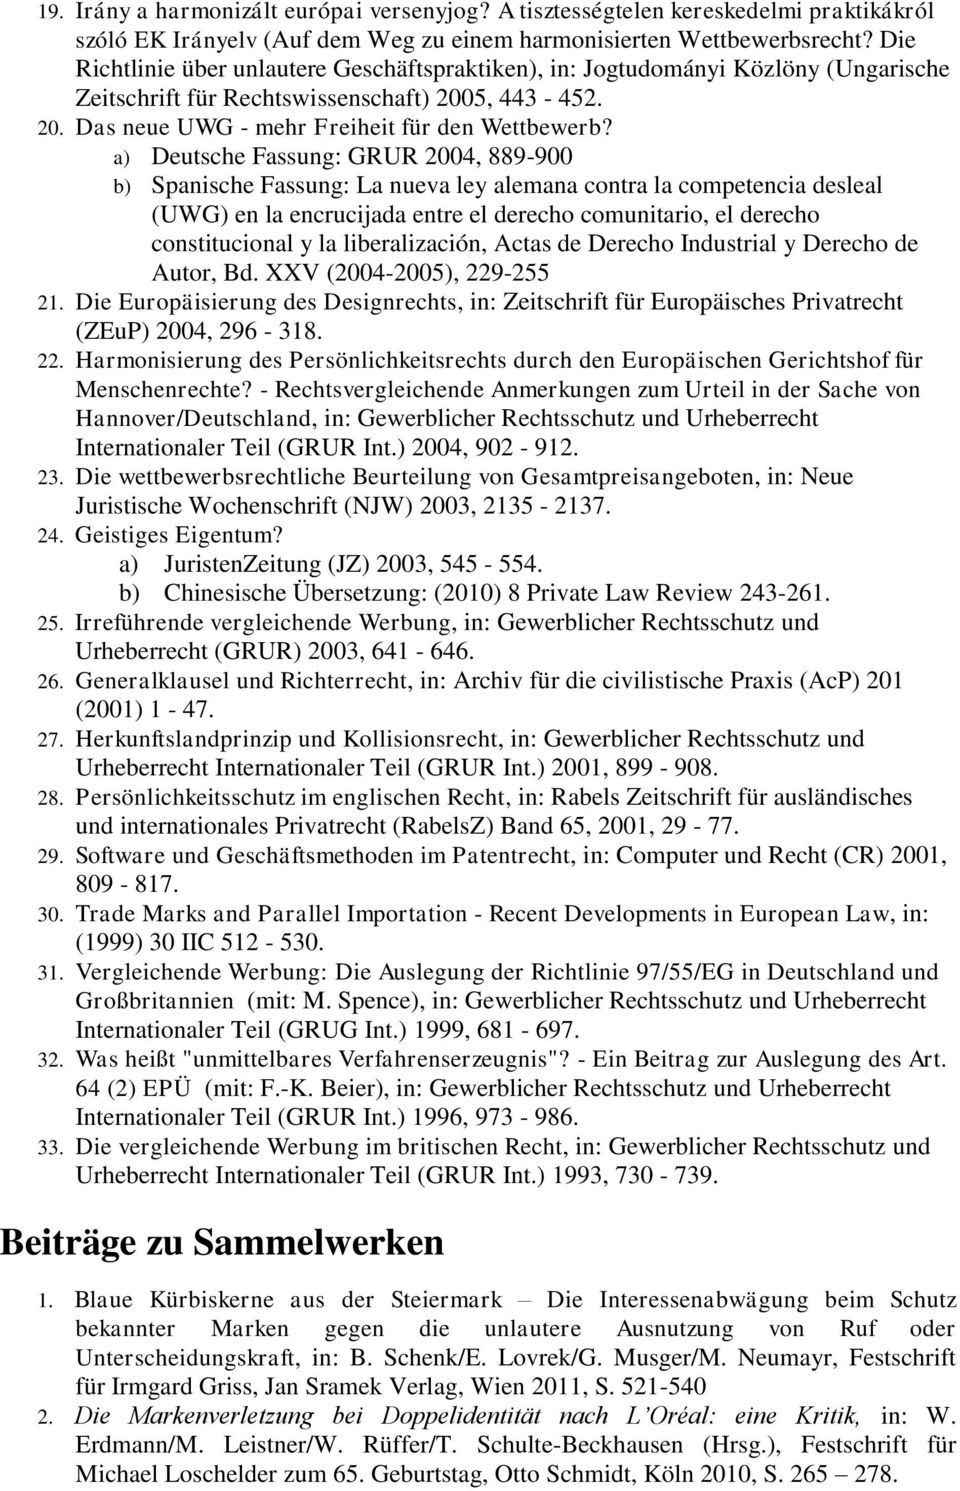 a) Deutsche Fassung: GRUR 2004, 889-900 b) Spanische Fassung: La nueva ley alemana contra la competencia desleal (UWG) en la encrucijada entre el derecho comunitario, el derecho constitucional y la